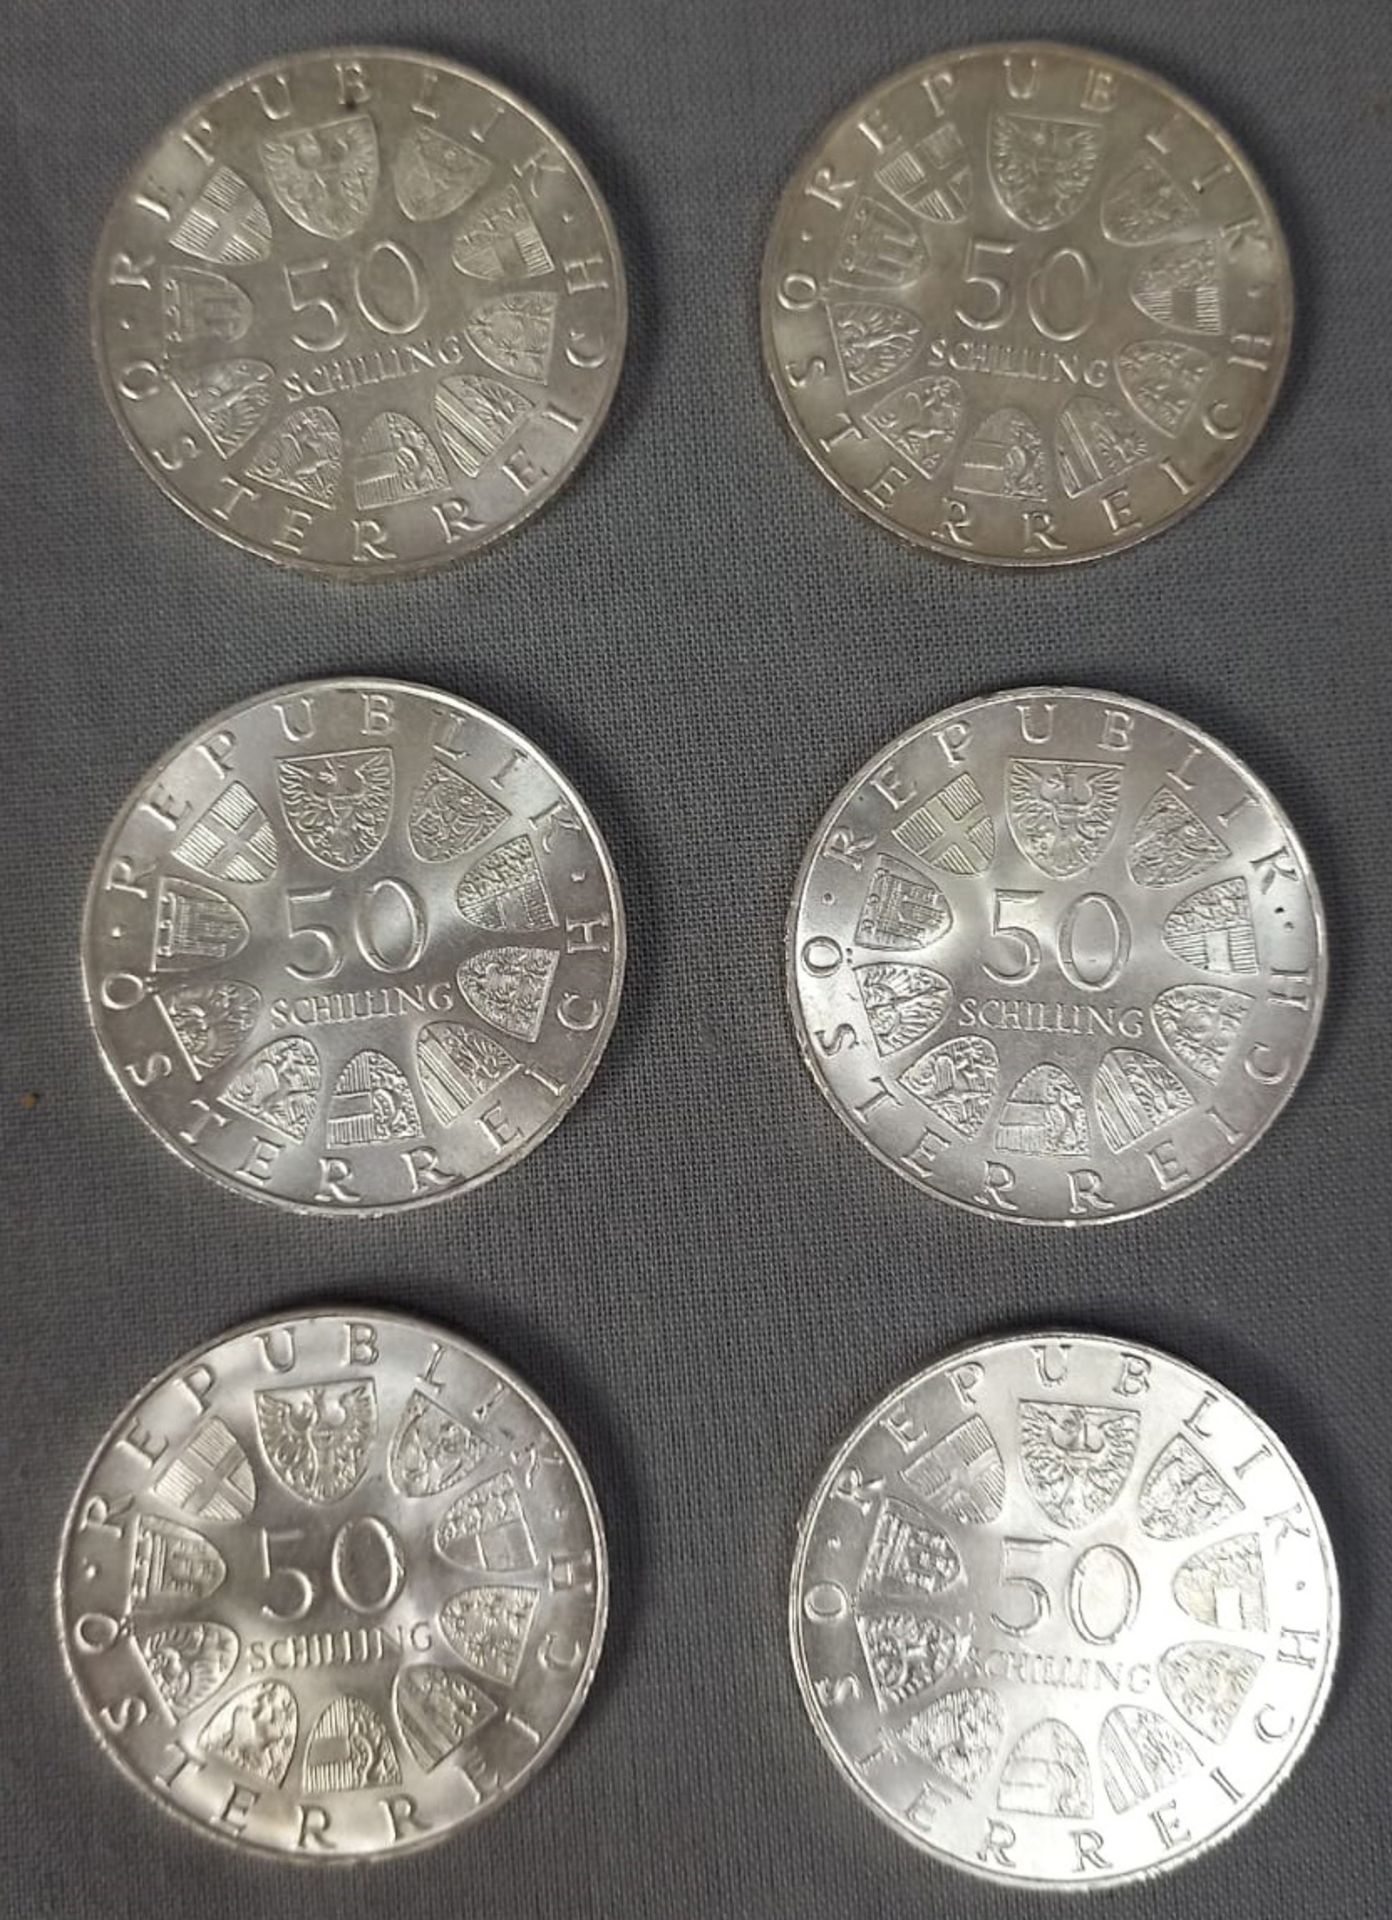 43 Silbermünzen á 50 Schilling. Republik Österreich. - Image 2 of 10